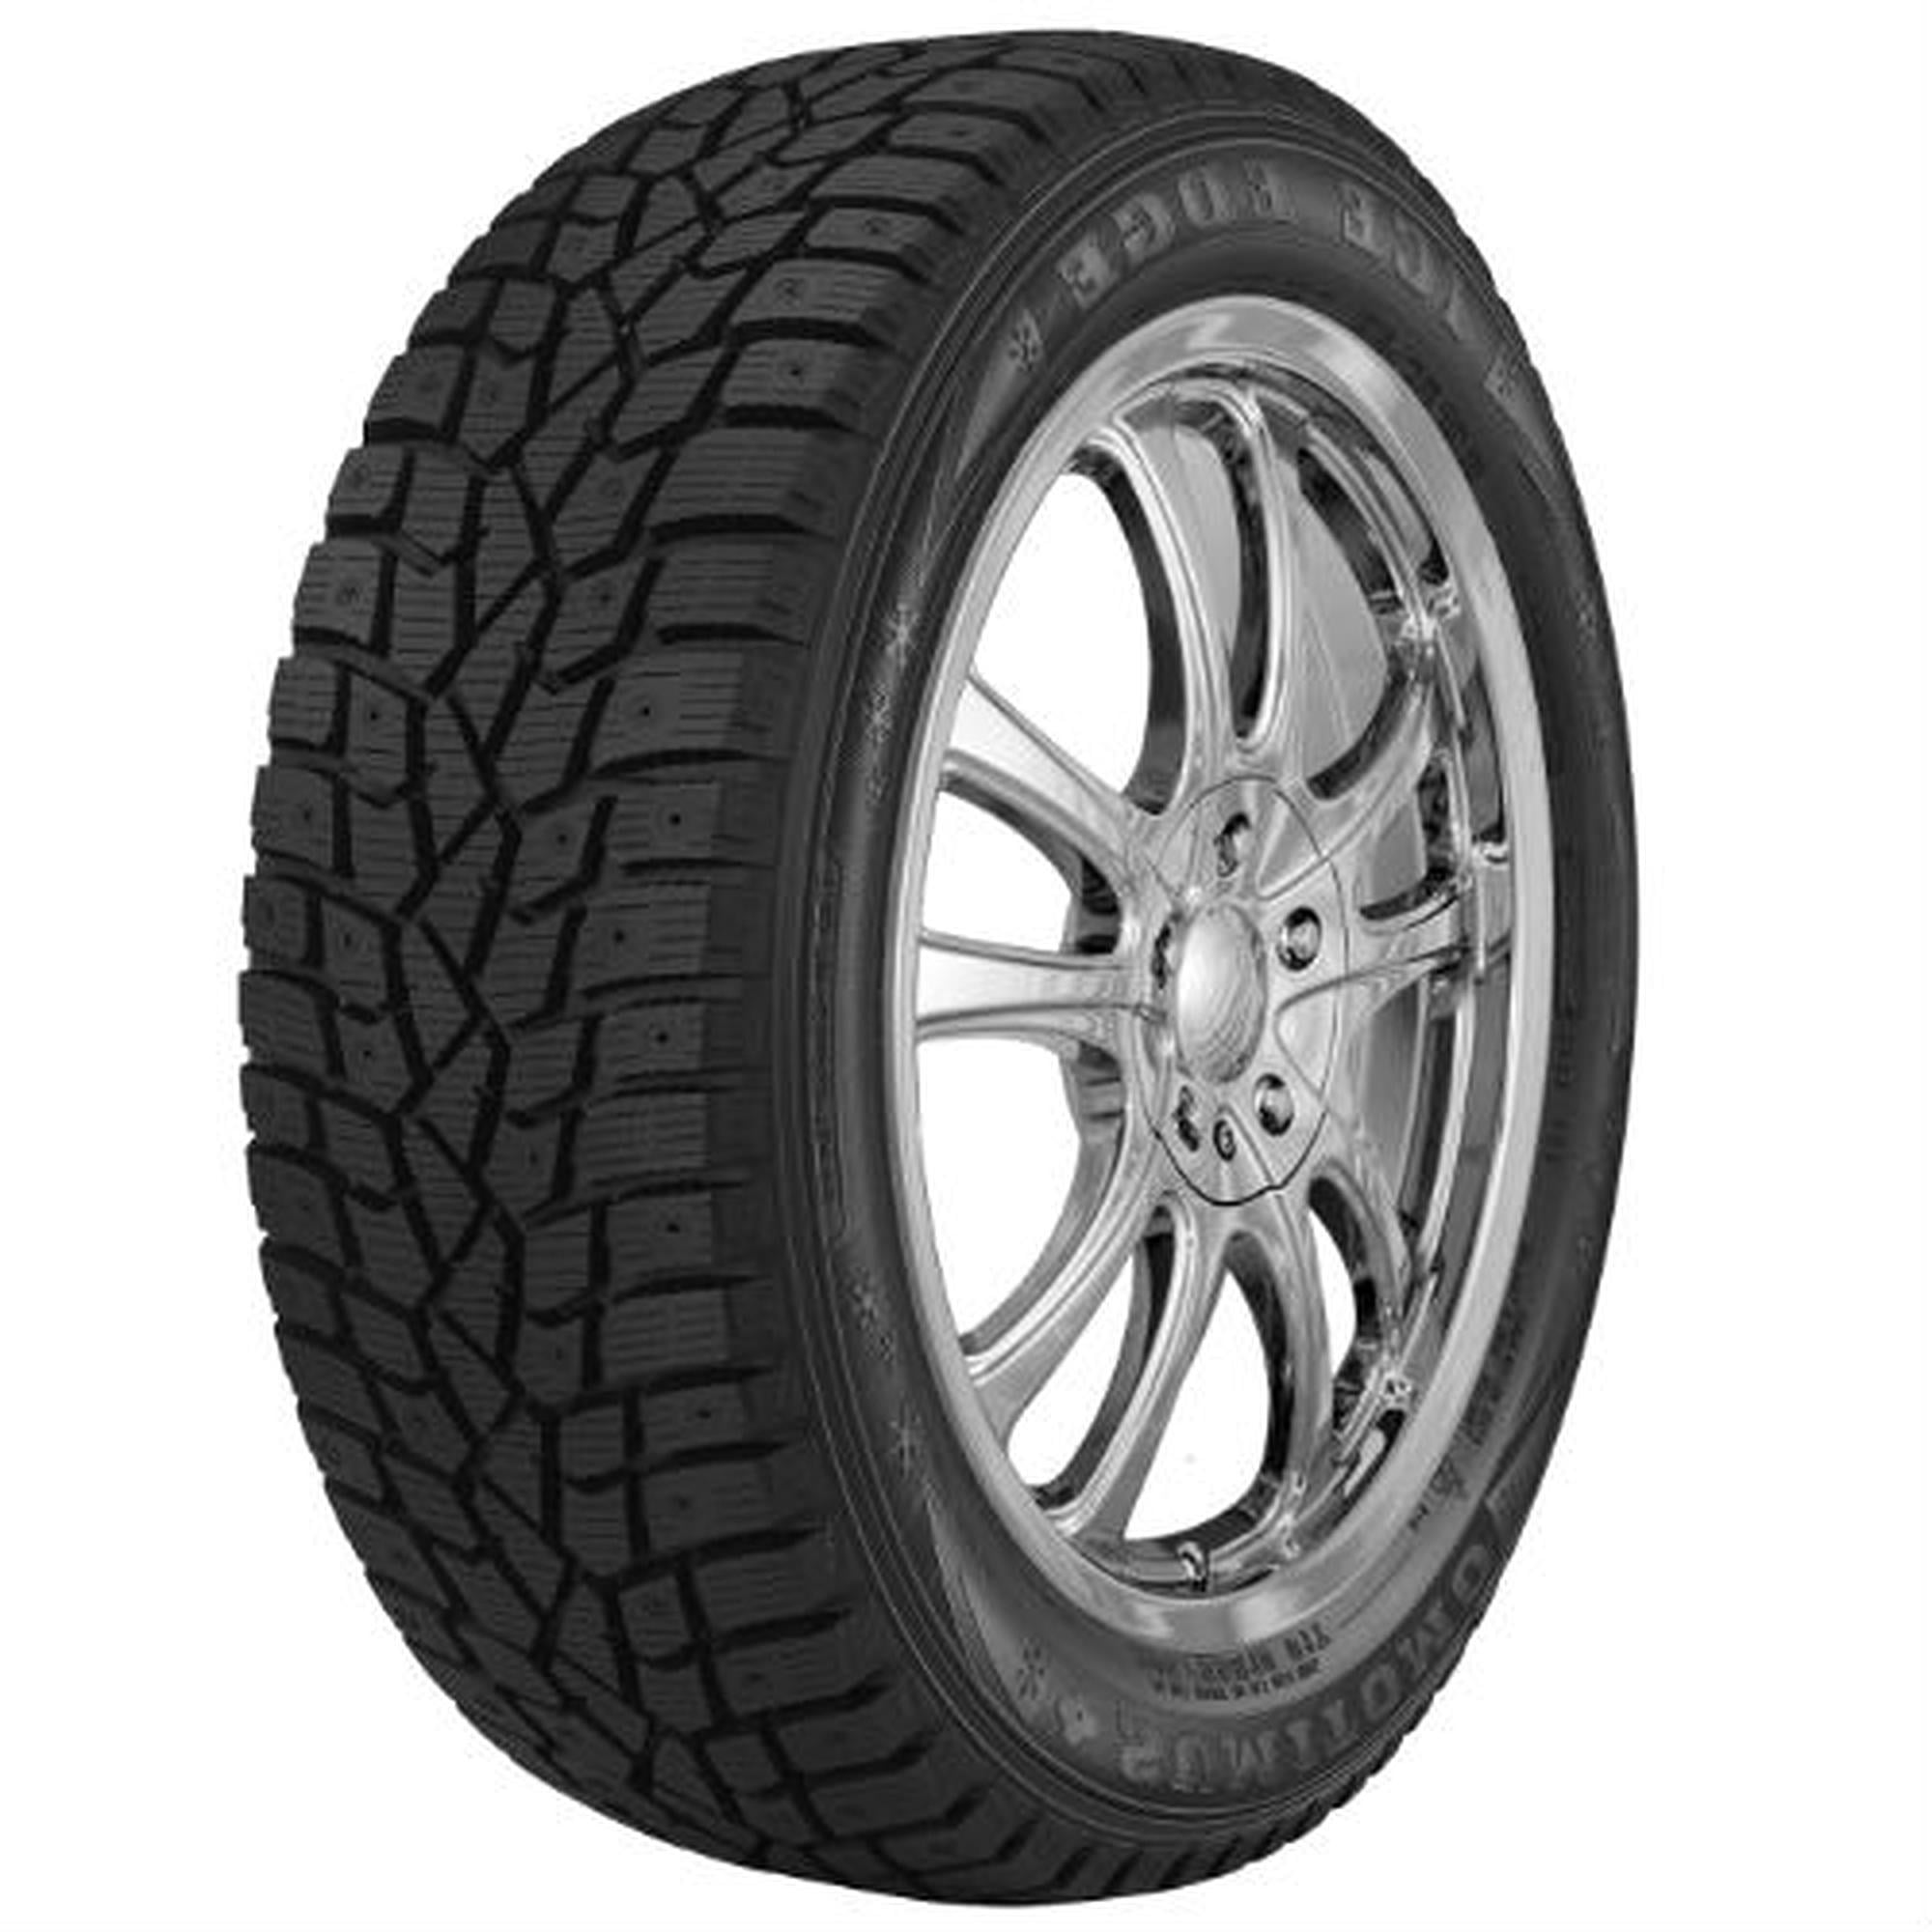 (Studless) Winter 185/65R15 Dunlop Tire 88T Snow Maxx